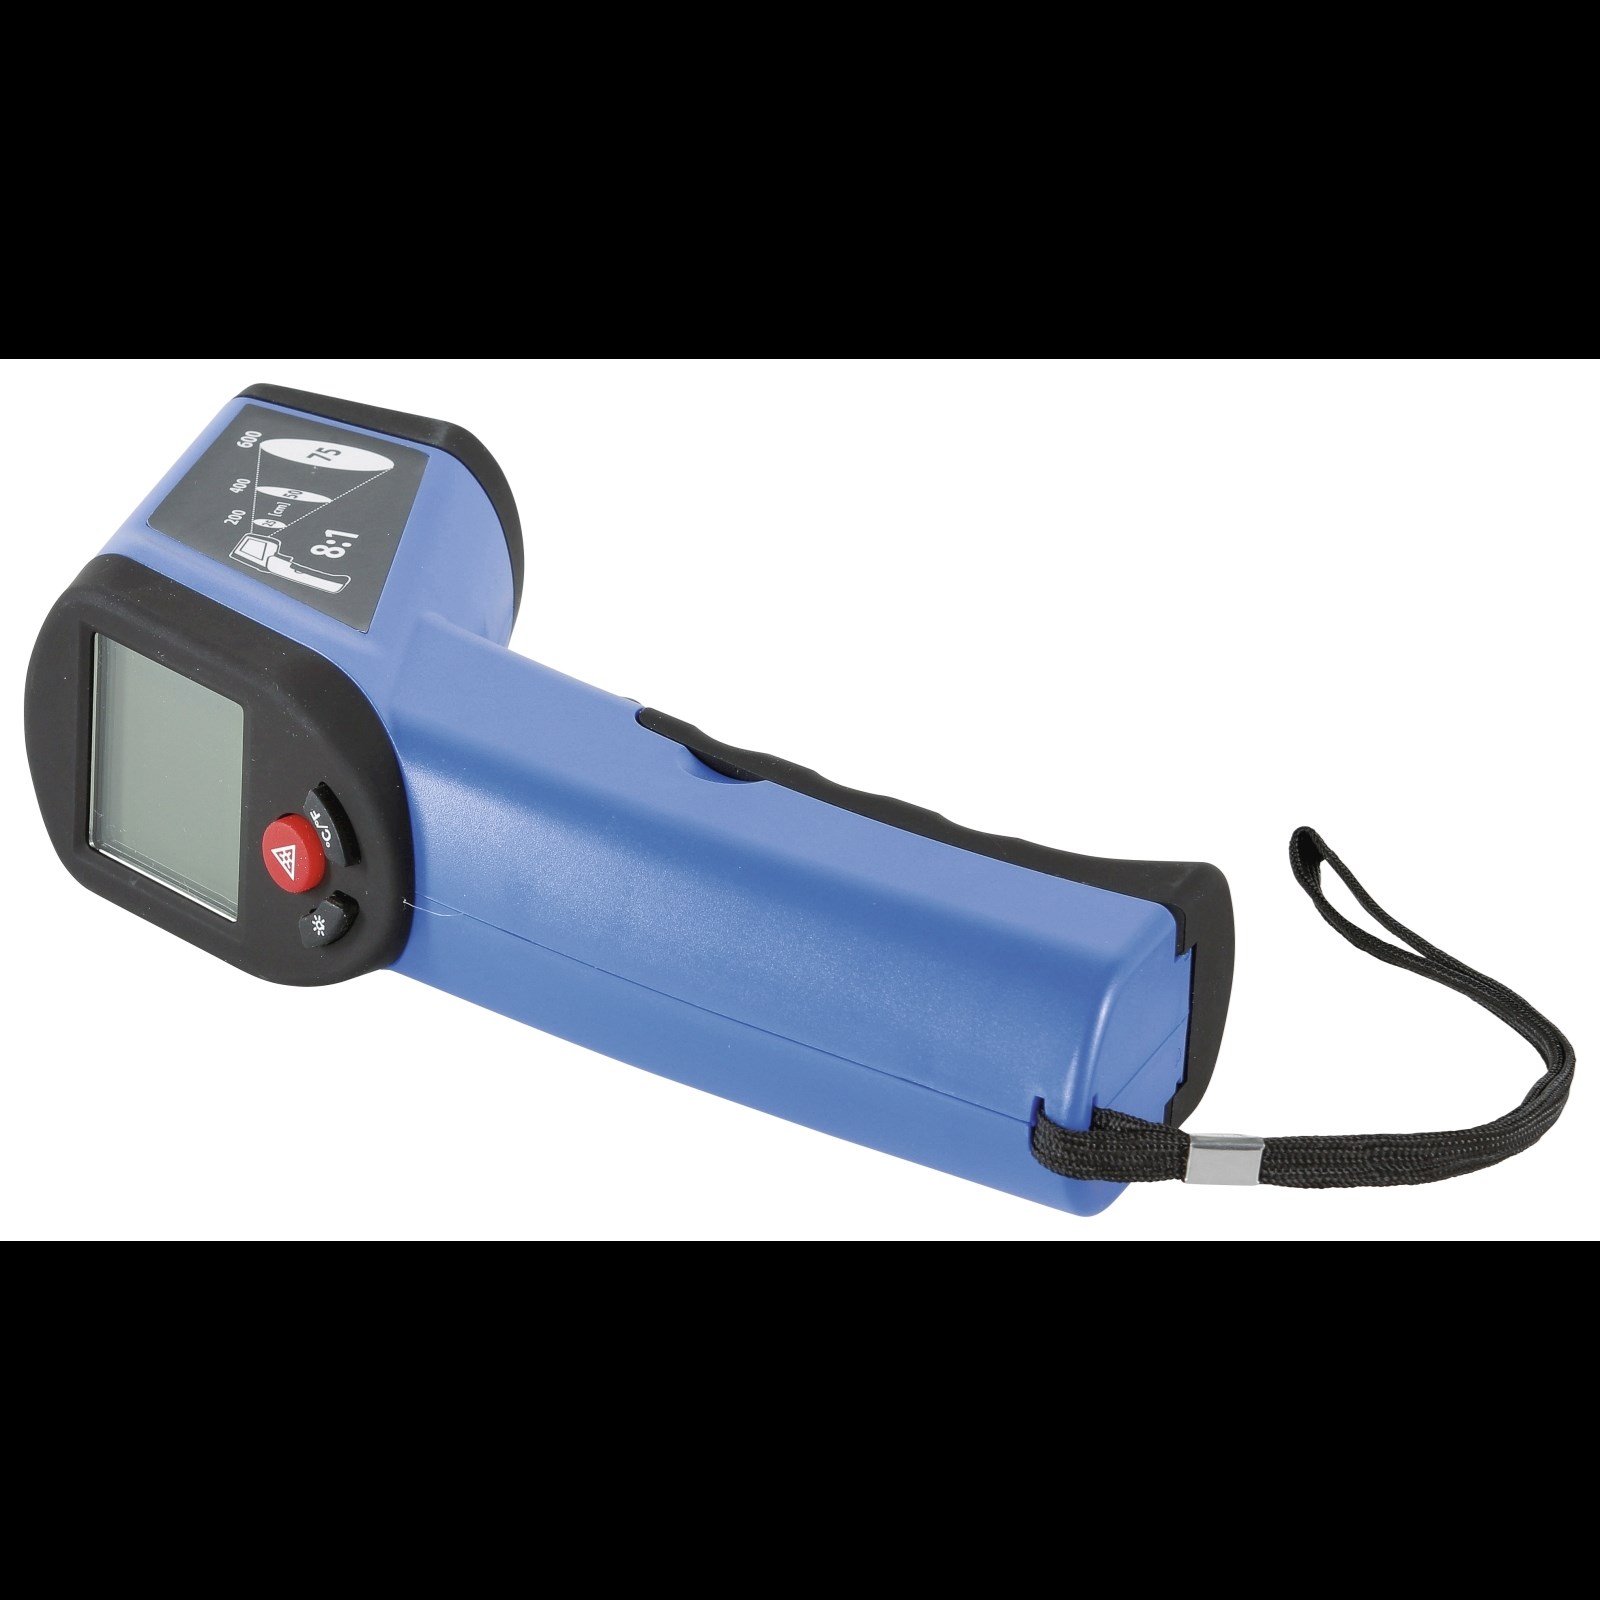 Infrarot-Thermometer Messgerät